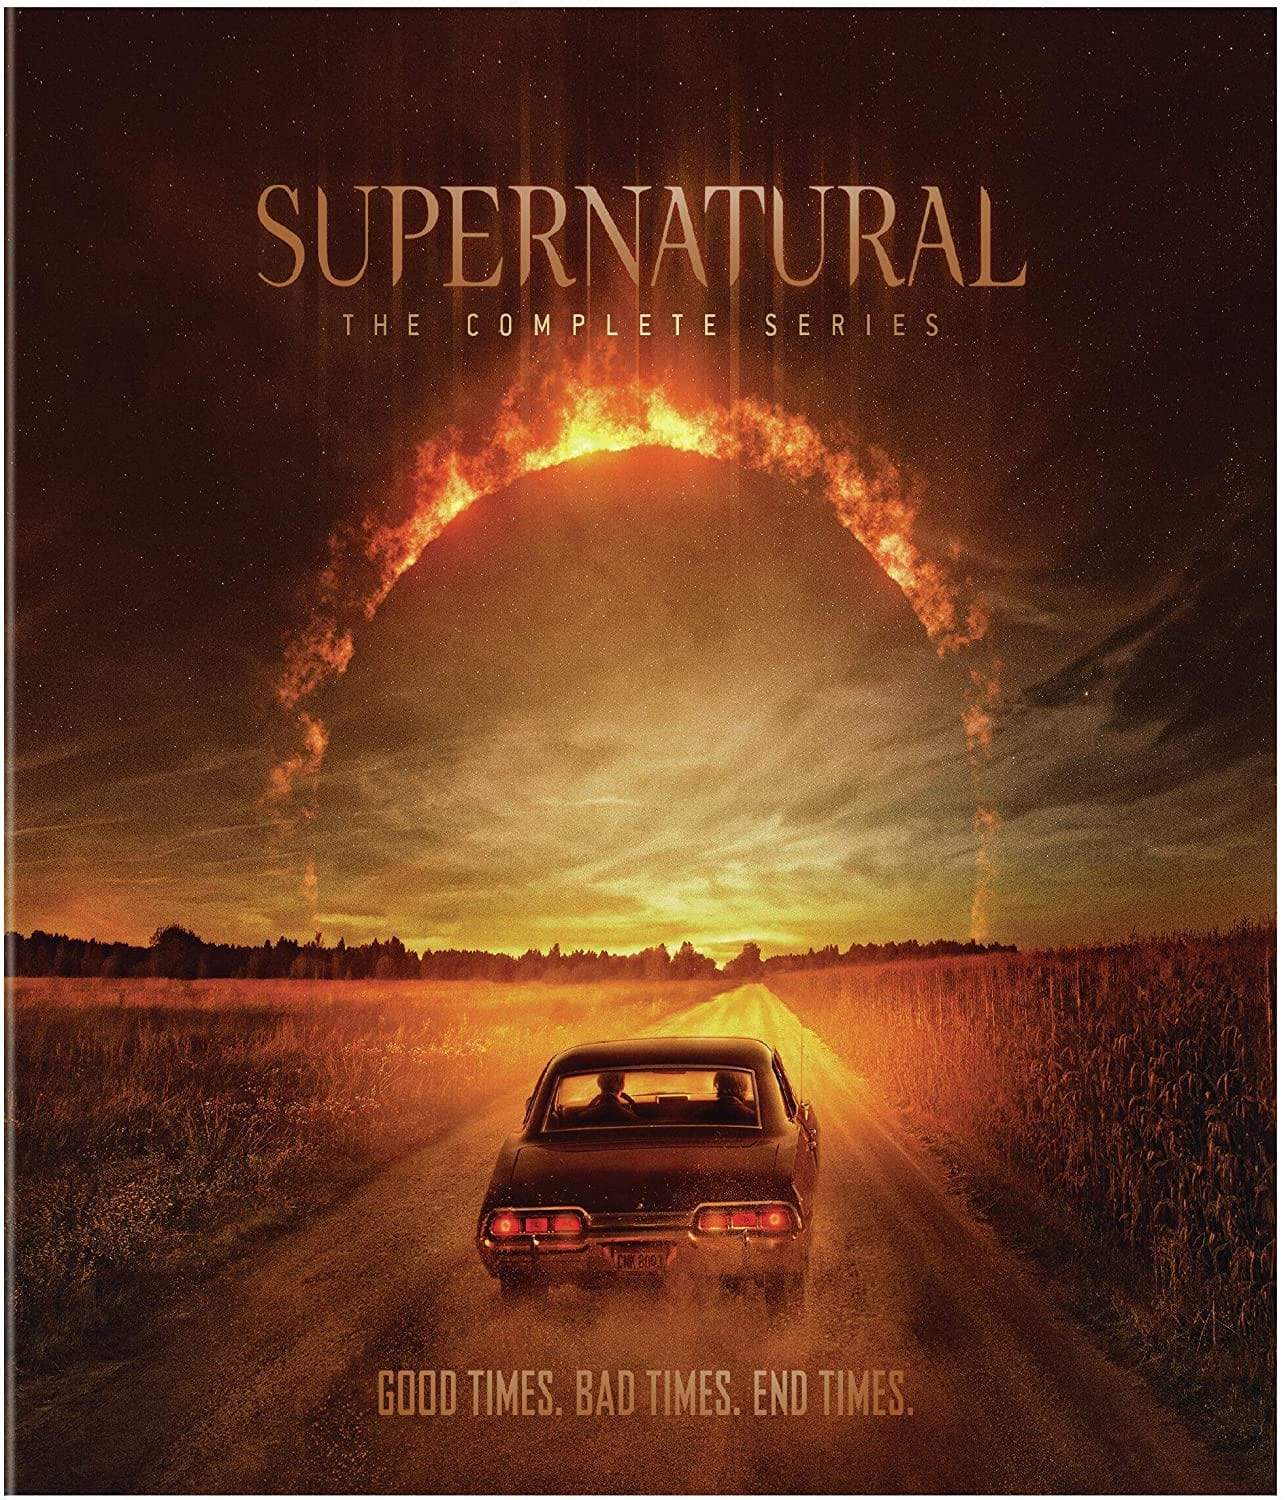 Supernatural  Complete Series DVD Set Warner Brothers DVDs & Blu-ray Discs > DVDs